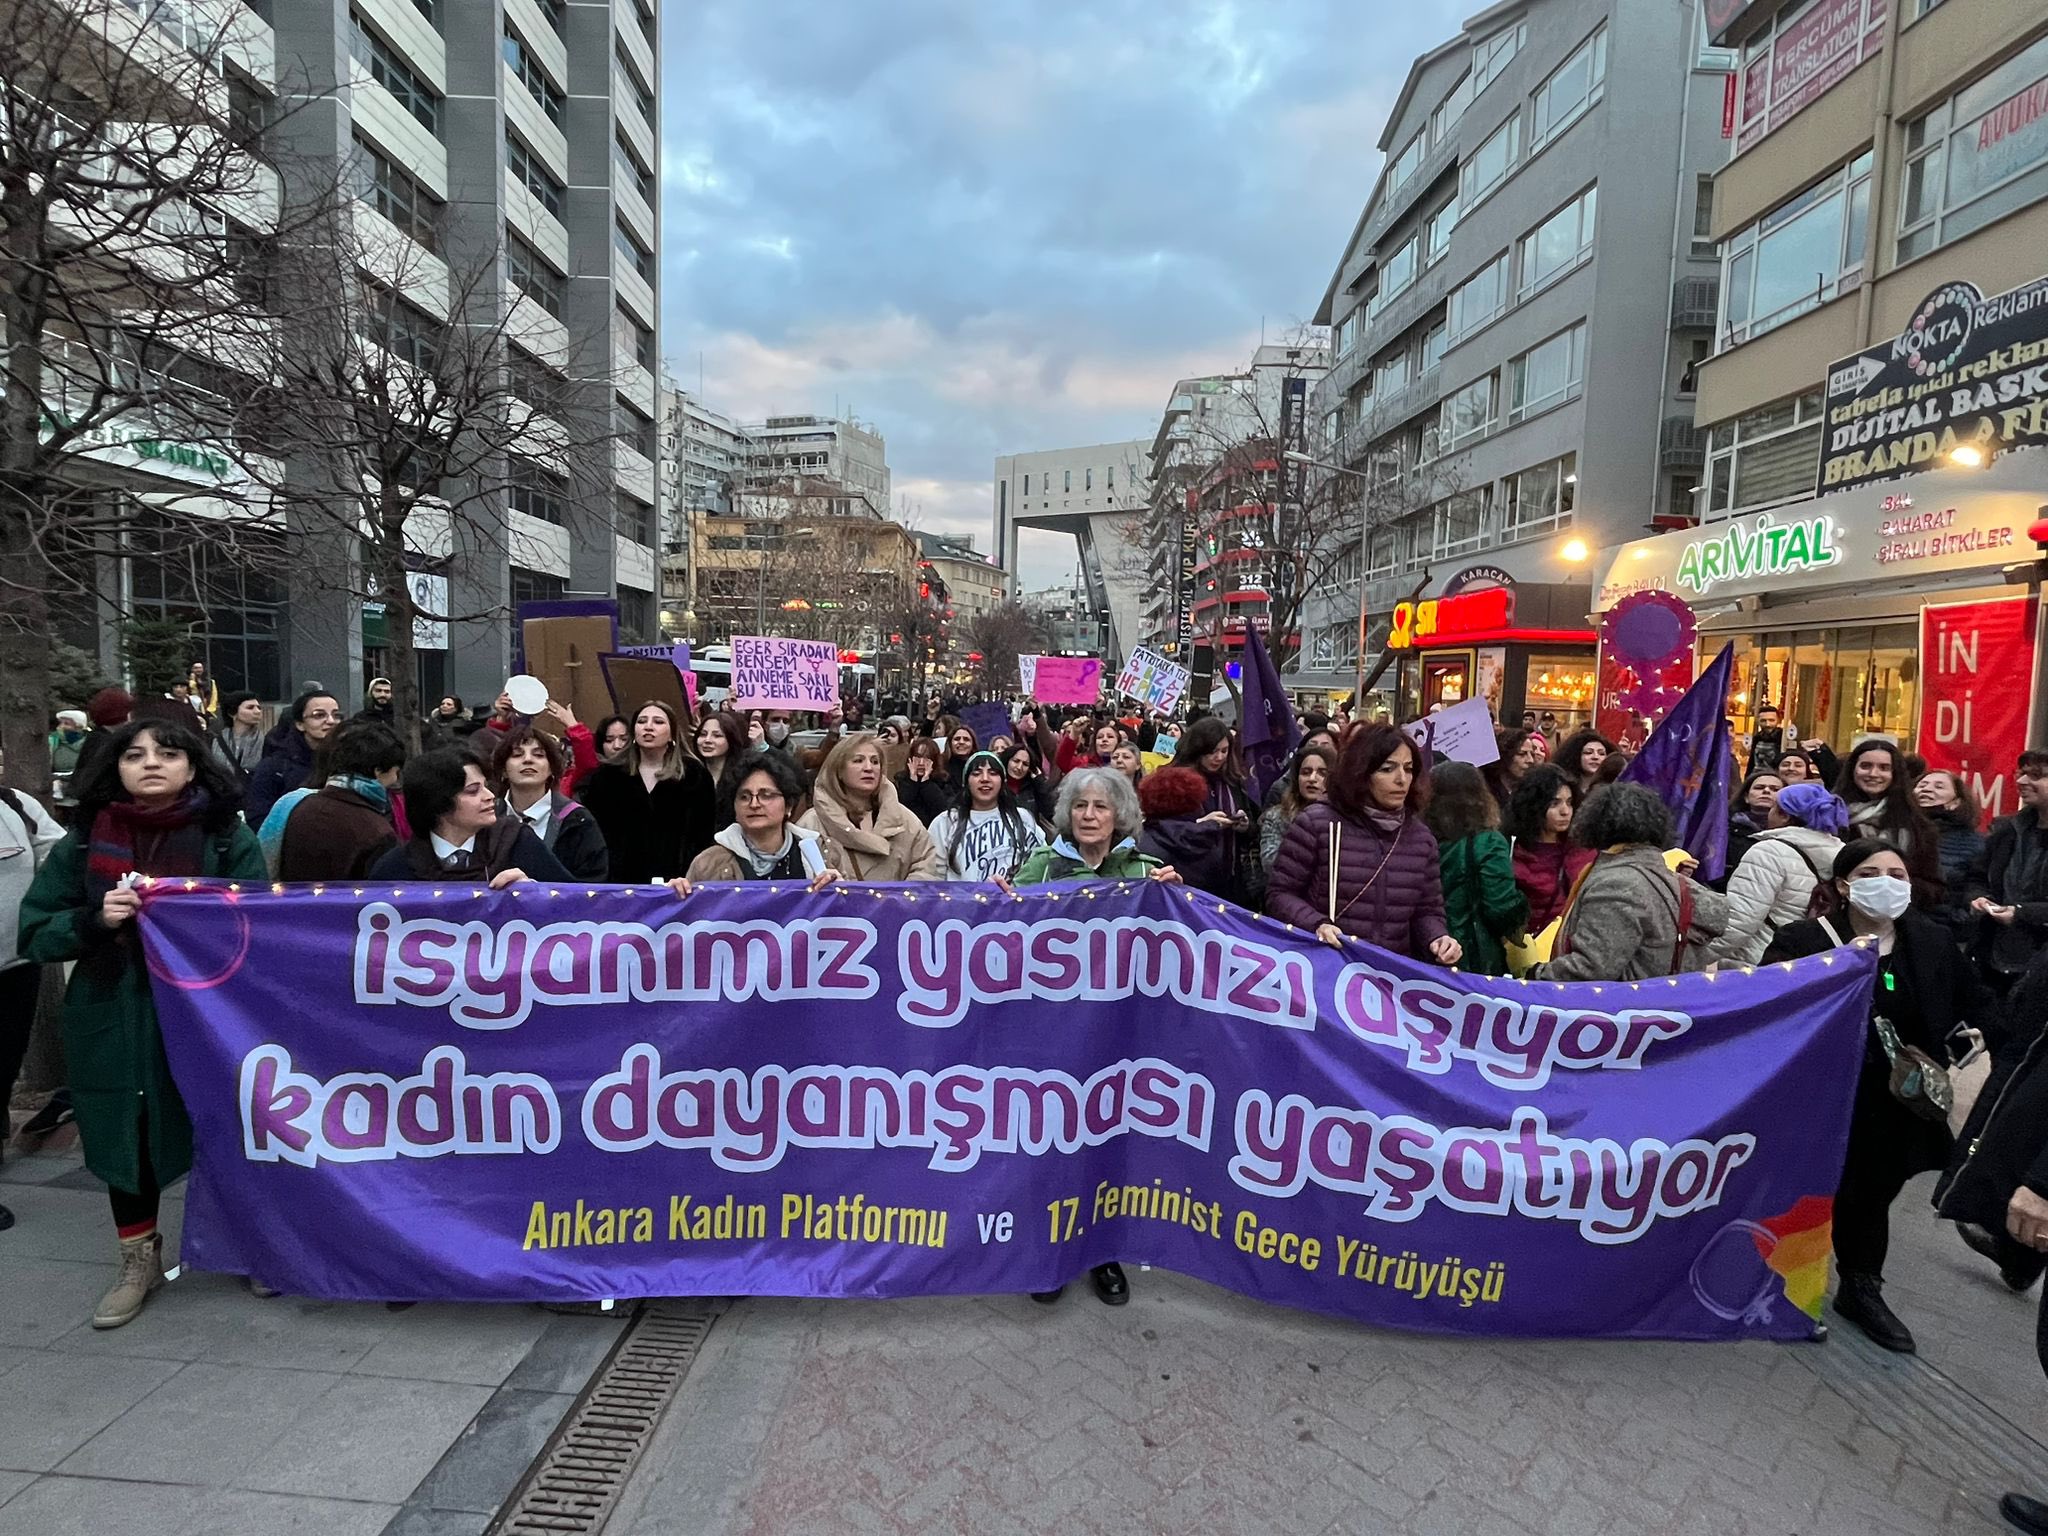 Ankara’da Feminist Gece Yürüyüşü: İsyanımız yasımızı aşıyor, kadın dayanışması yaşatıyor! Kaos GL - LGBTİ+ Haber Portalı